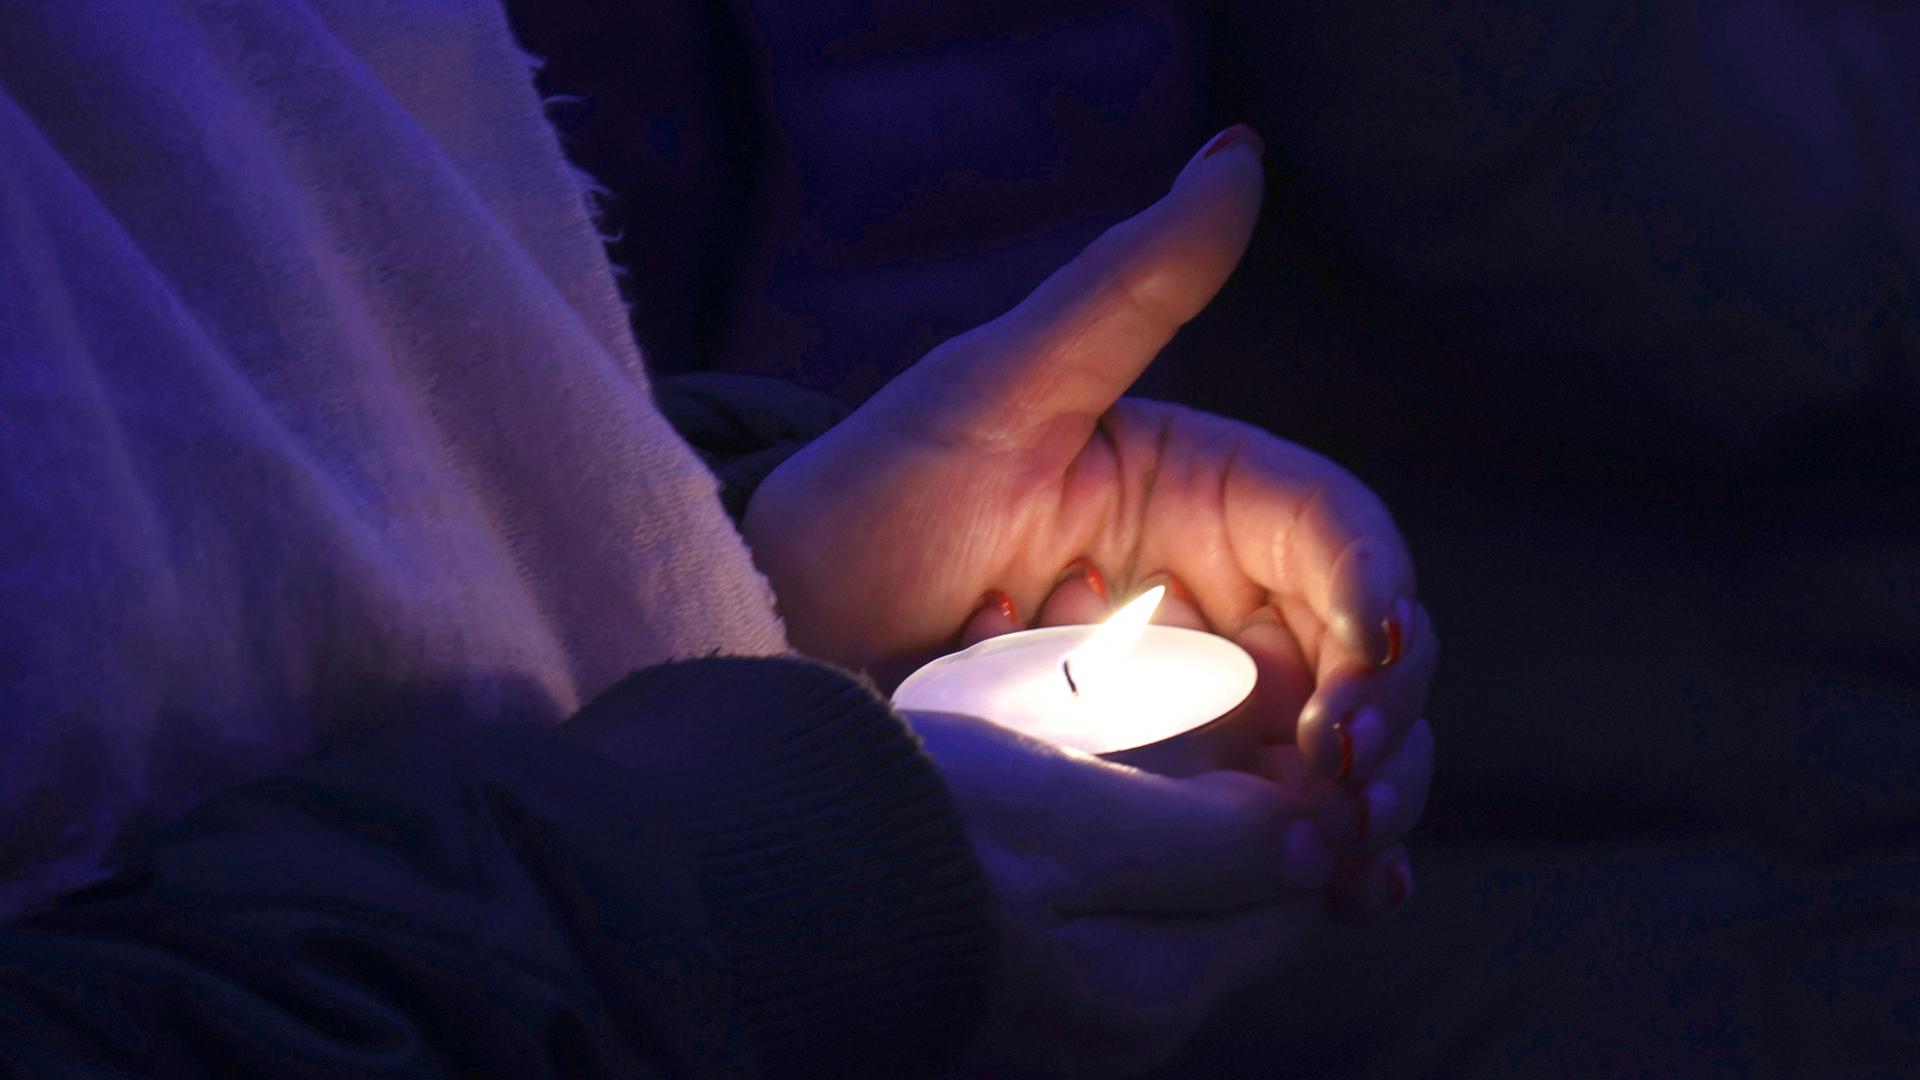 Zwei Hände halten ein brennendes Teelicht bei einer Gedenkfeier für die ukrainischen Opfer eines russischen Luftschlags auf das Mariupol Theater 2022